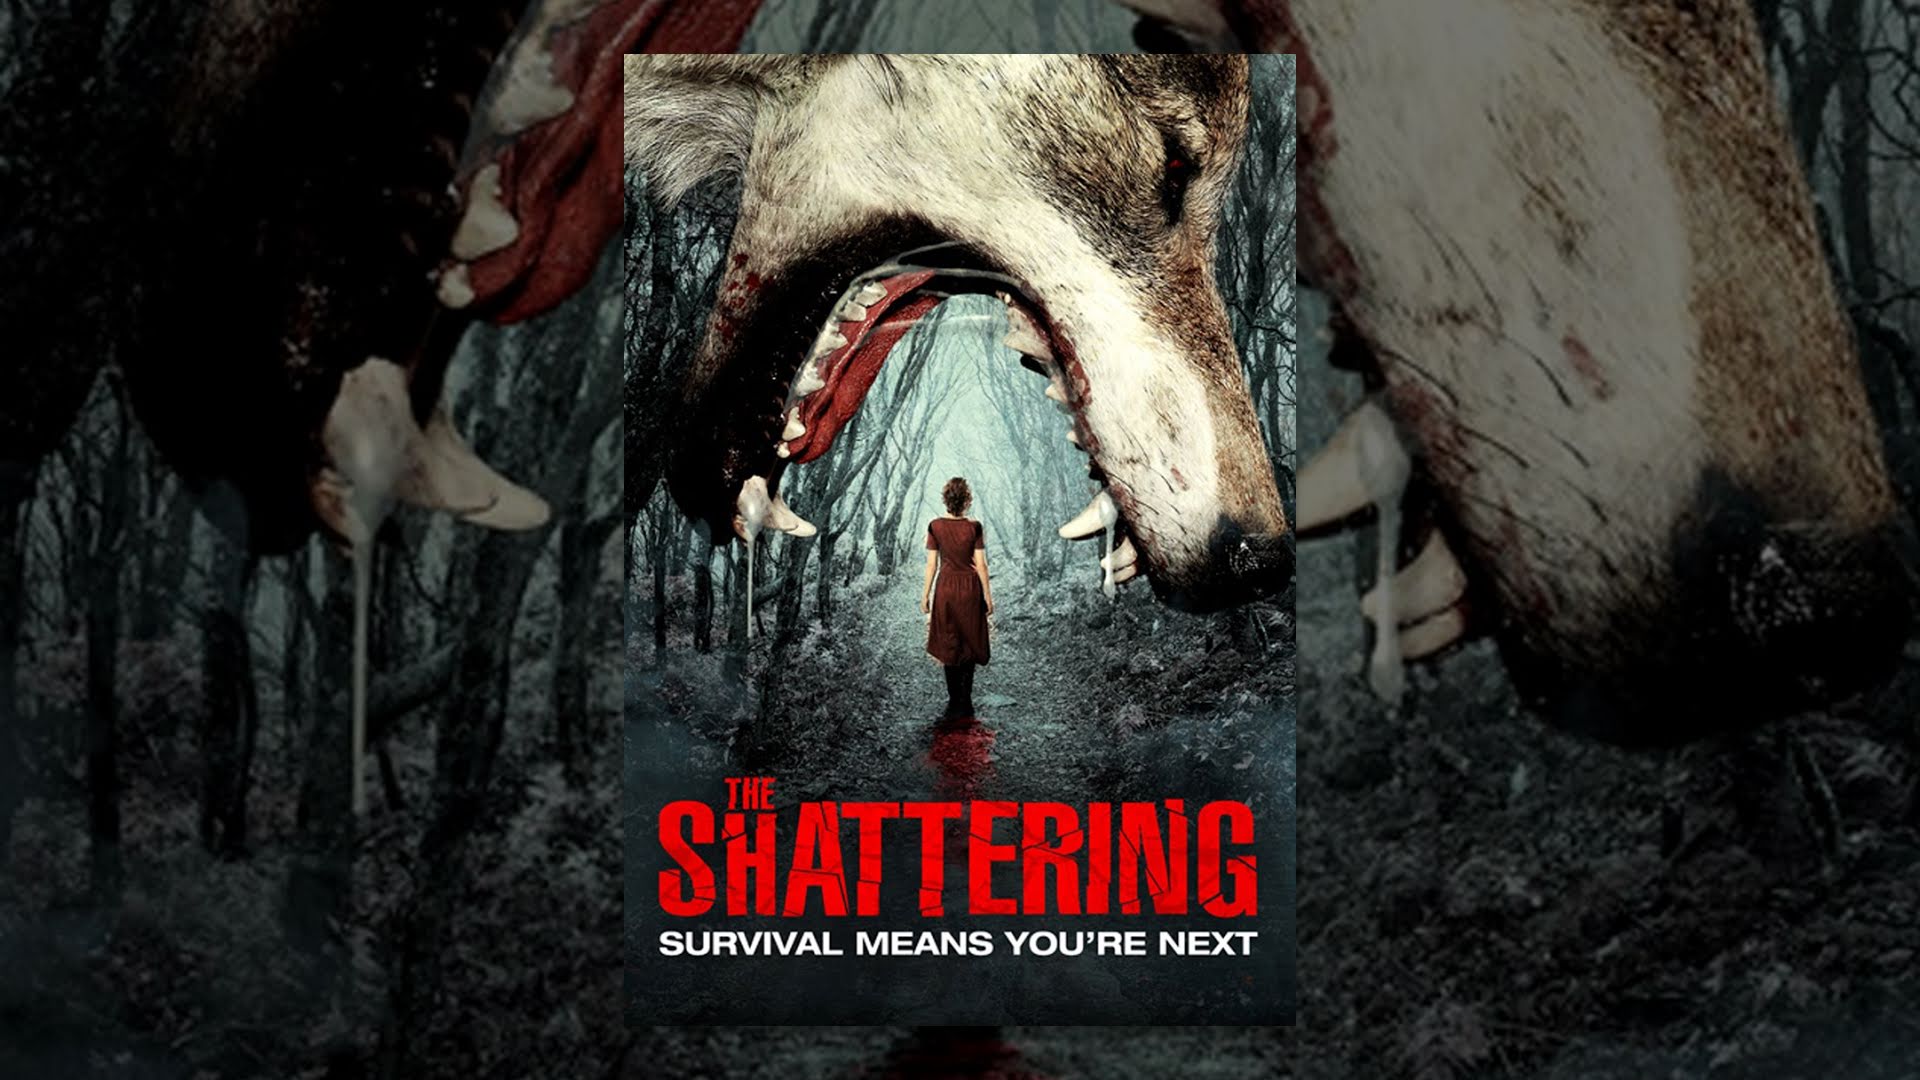 The Shattering | Full Horror Movie - YouTube